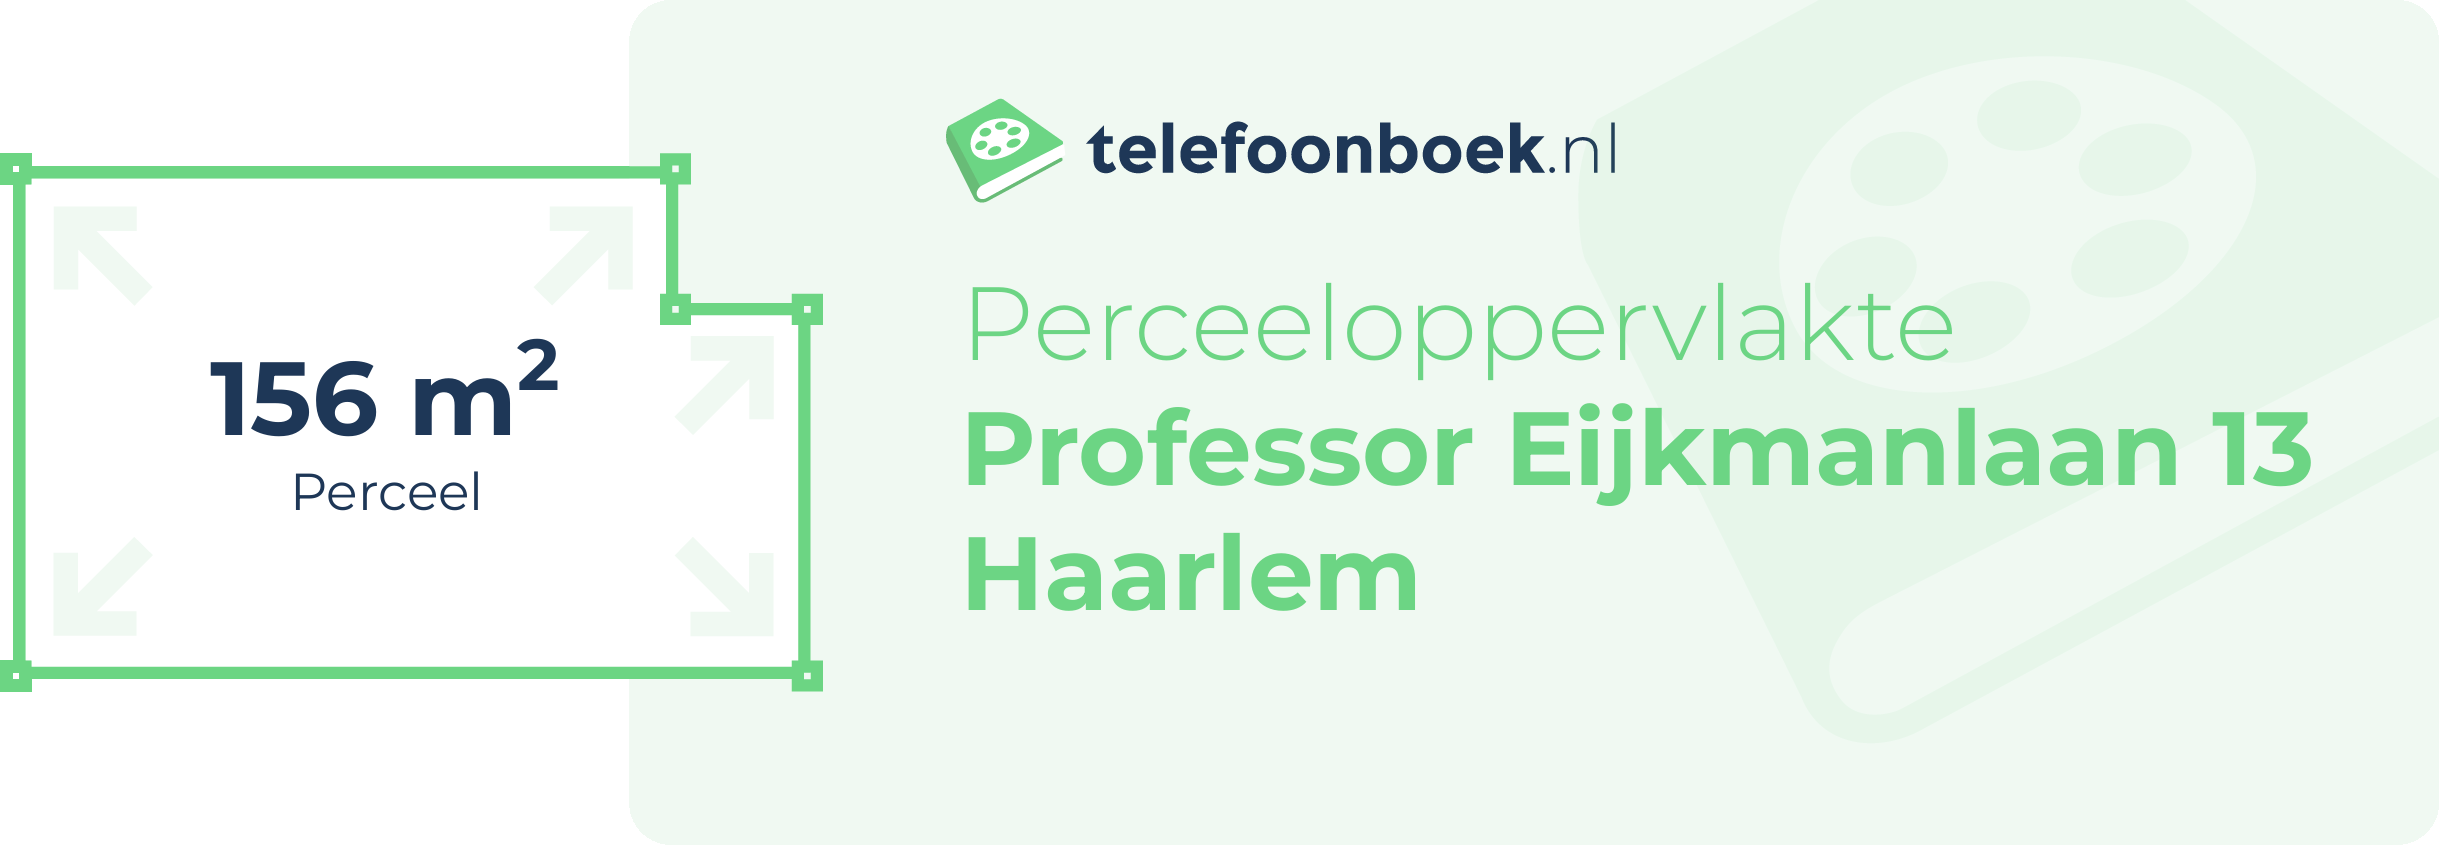 Perceeloppervlakte Professor Eijkmanlaan 13 Haarlem